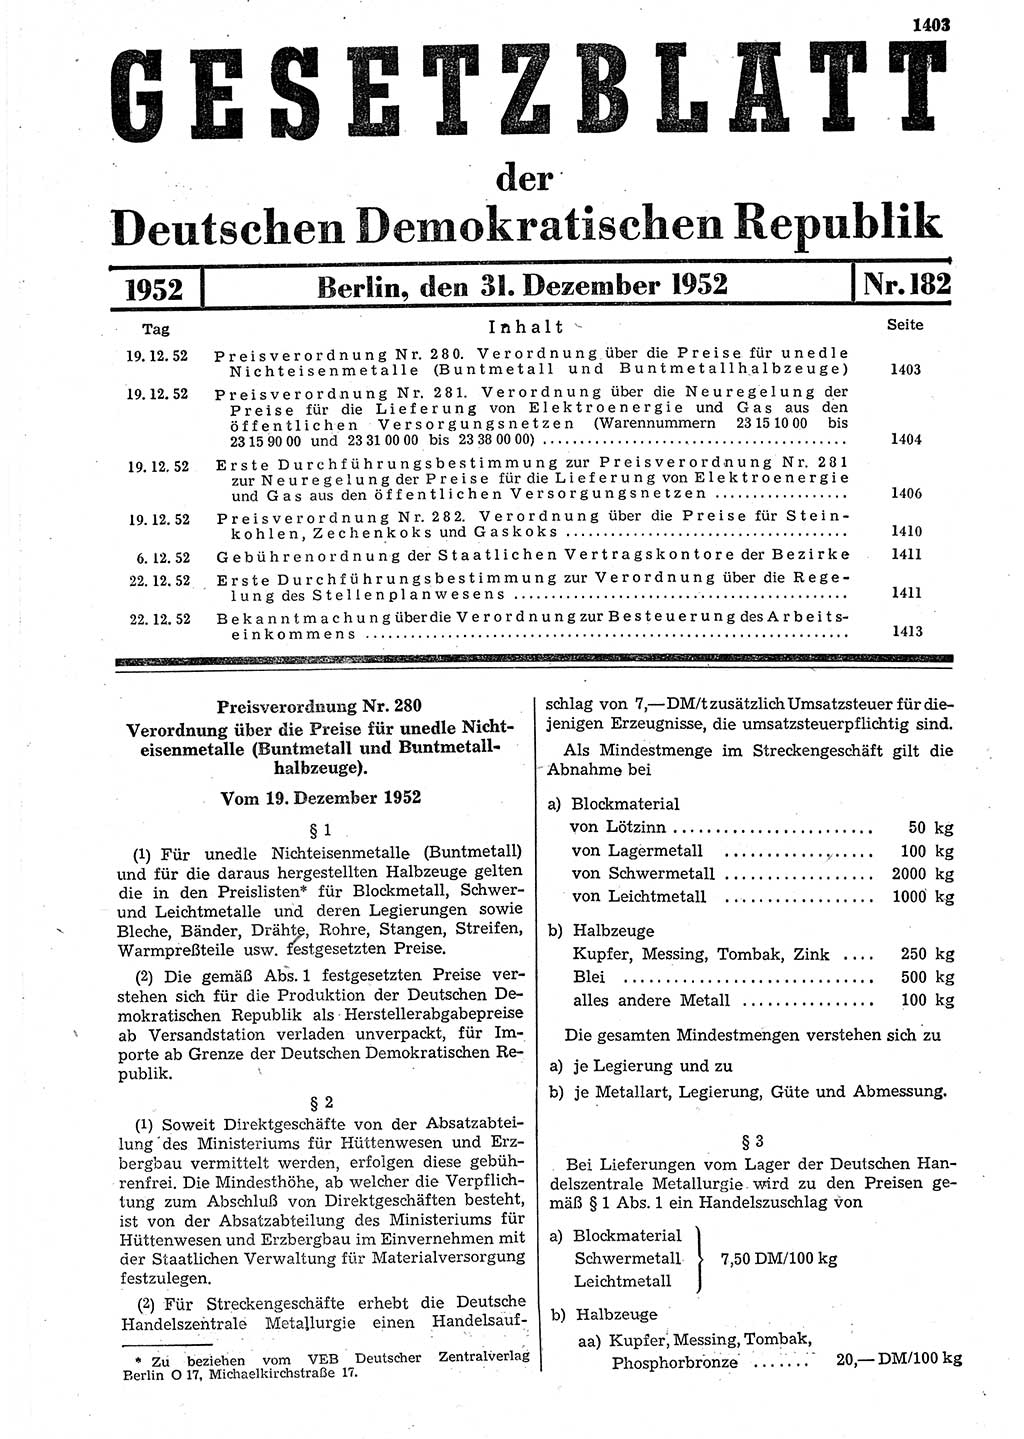 Gesetzblatt (GBl.) der Deutschen Demokratischen Republik (DDR) 1952, Seite 1403 (GBl. DDR 1952, S. 1403)